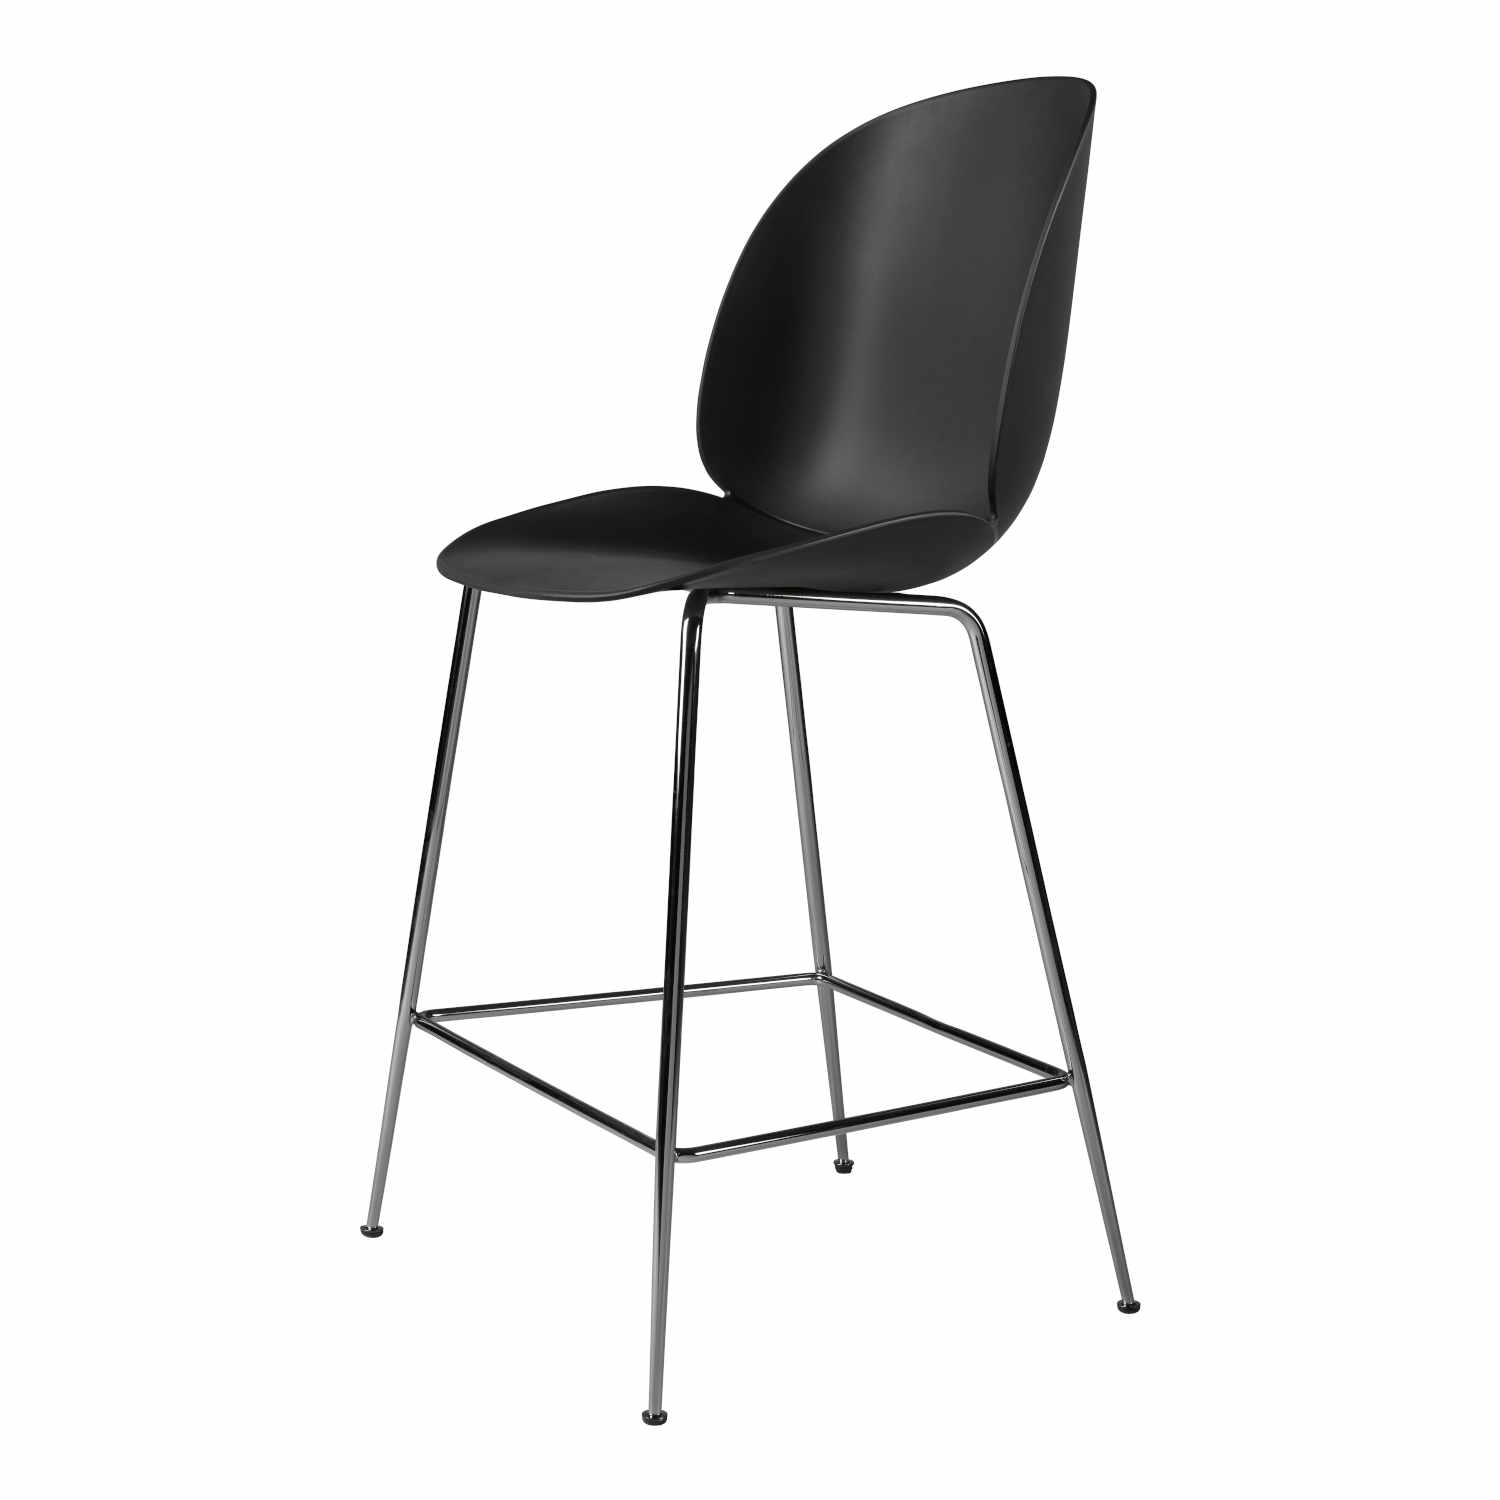 Beetle Counter Chair Conic Barhocker, Grösse sitzhöhe 73,5 cm, Sitzschale Plastic Shell amber brown, Untergestell Conic Base black matt von GUBI